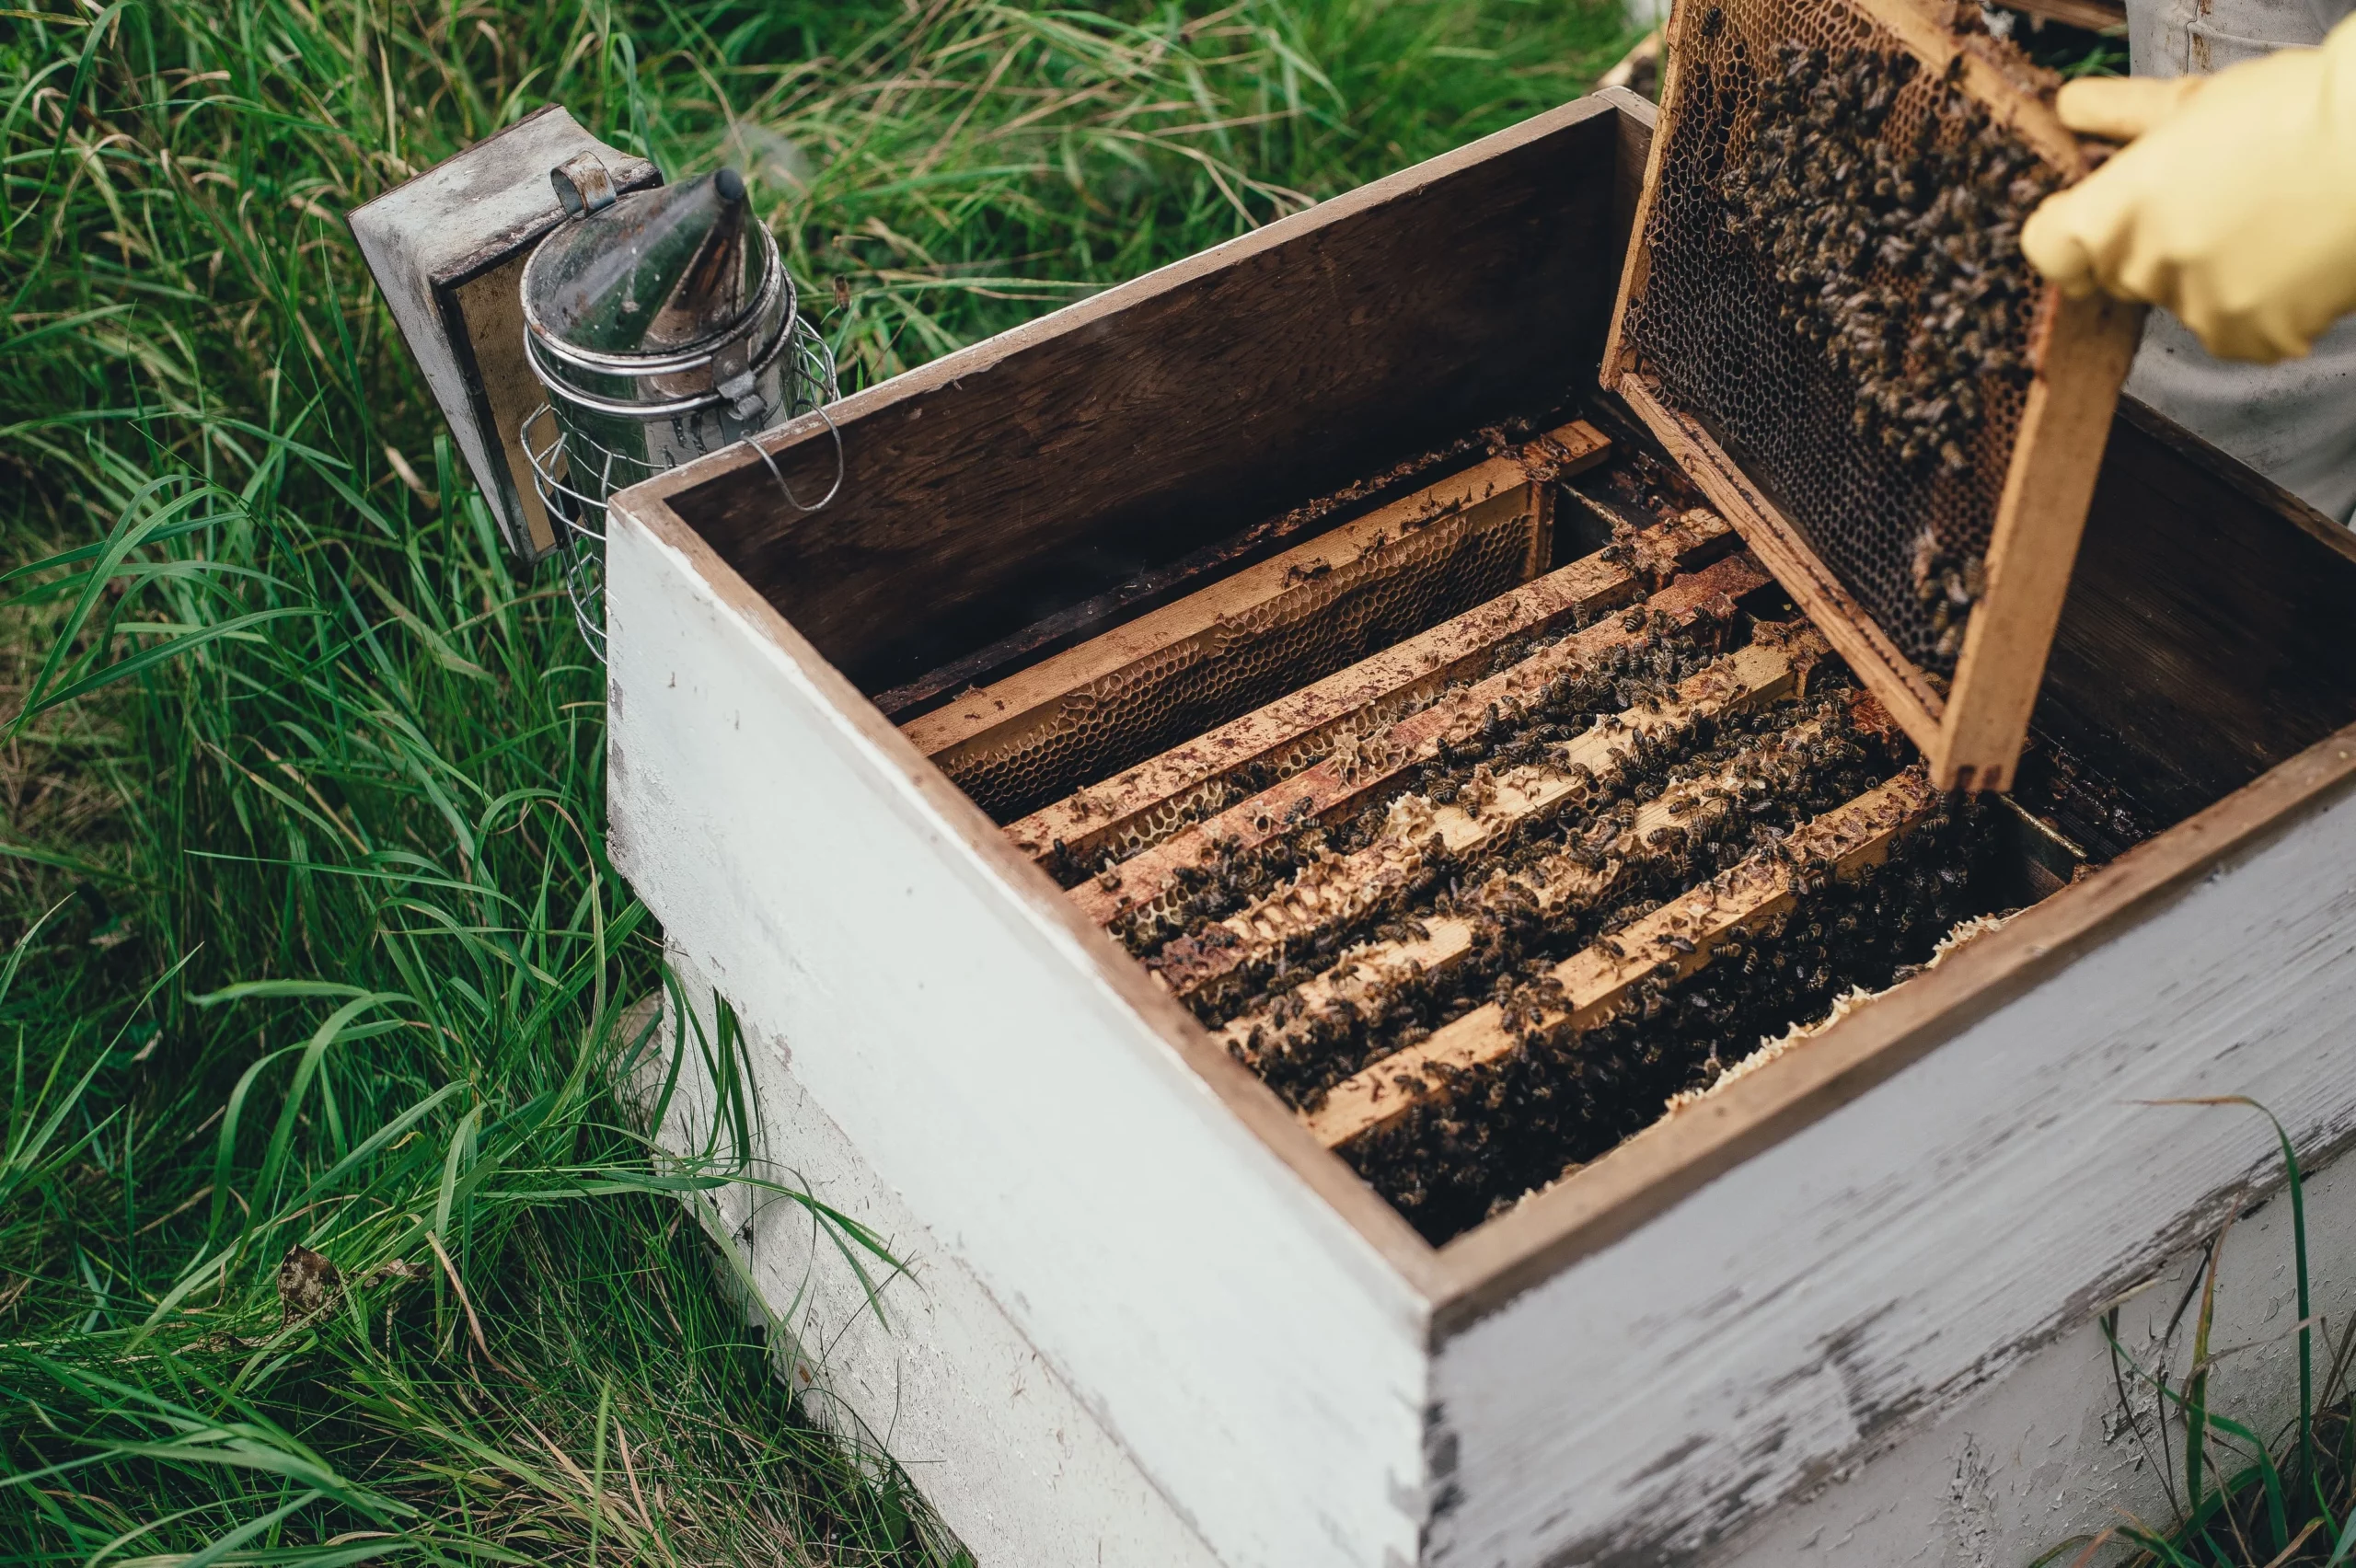 Как выводить маток пчел от а до я: вывод пчелиных маток